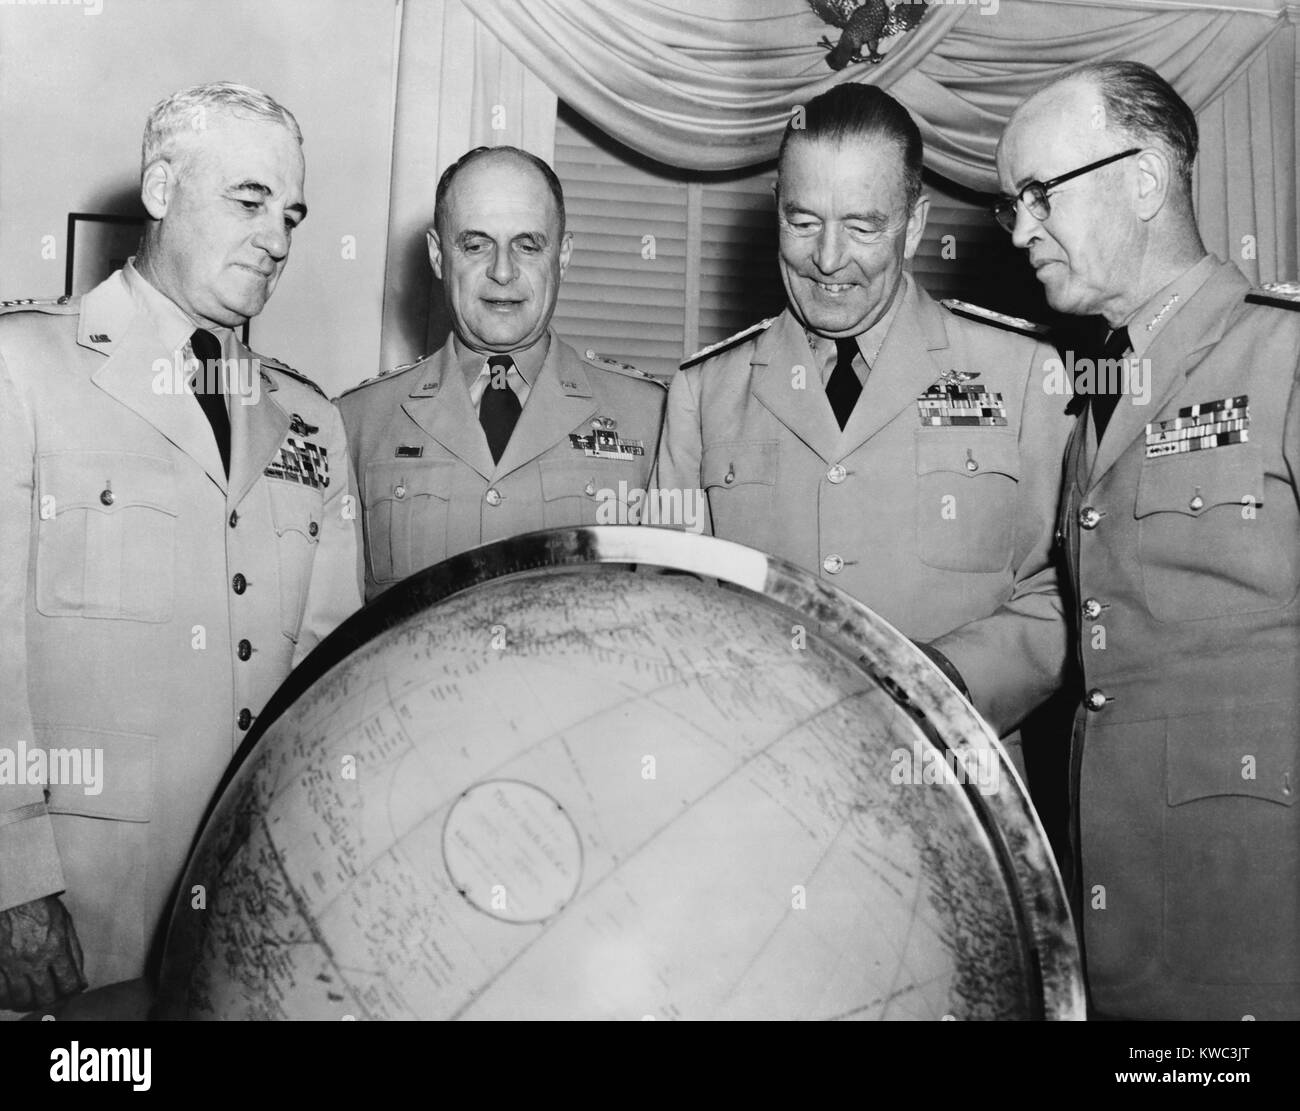 Us-Streitkräfte Generalstabs unter Präsident Eisenhower, 1953. Gestellt auf einem Globus, L-R: Nathan F. Twining, General Matthew Ridgeway, Admiral Arthur Radford und Admiral Robert B. Carney. (BSLOC 2015 14 126) Stockfoto